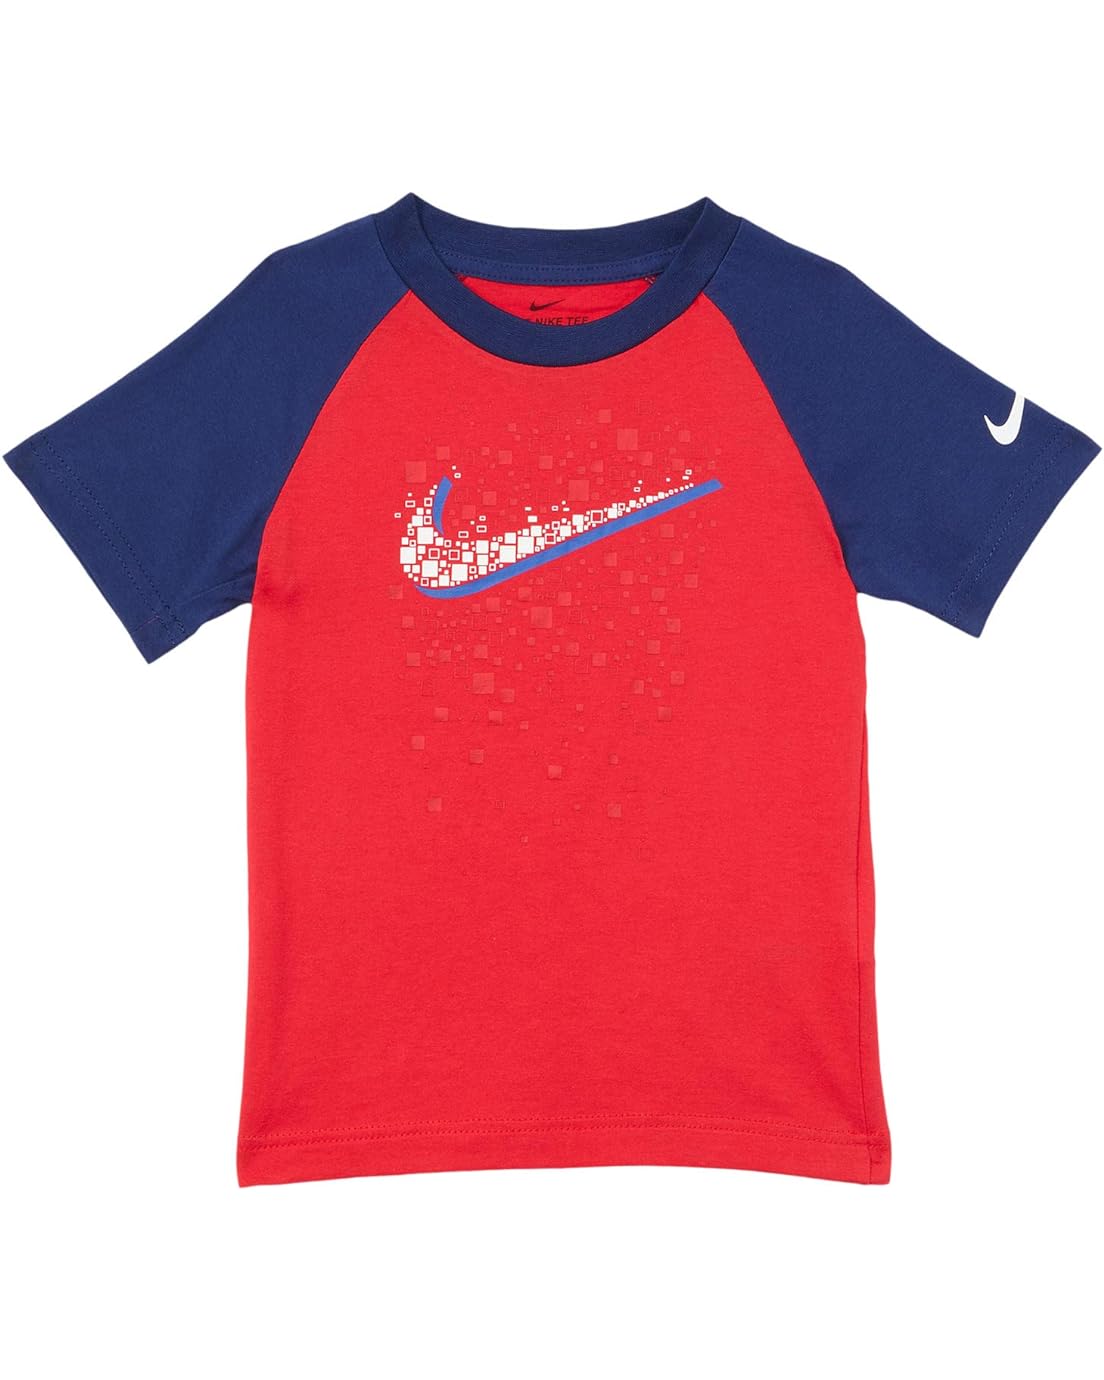 Nike Kids Swoosh Pixel Raglan Graphic T-Shirt (Toddler)